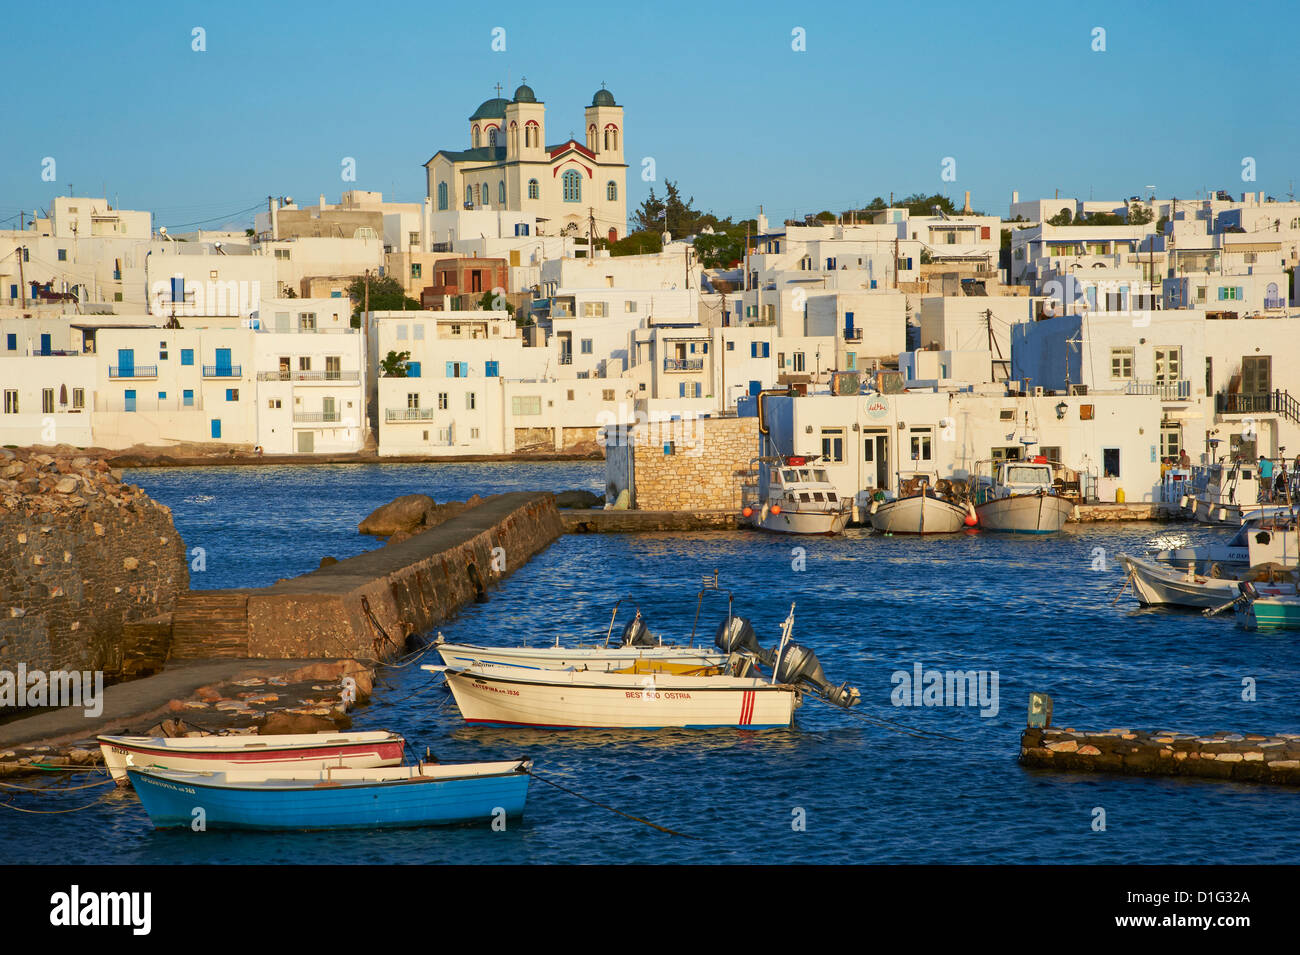 Hafen, Naoussa, Paros, Cyclades, Aegean, griechische Inseln, Griechenland, Europa Stockfoto